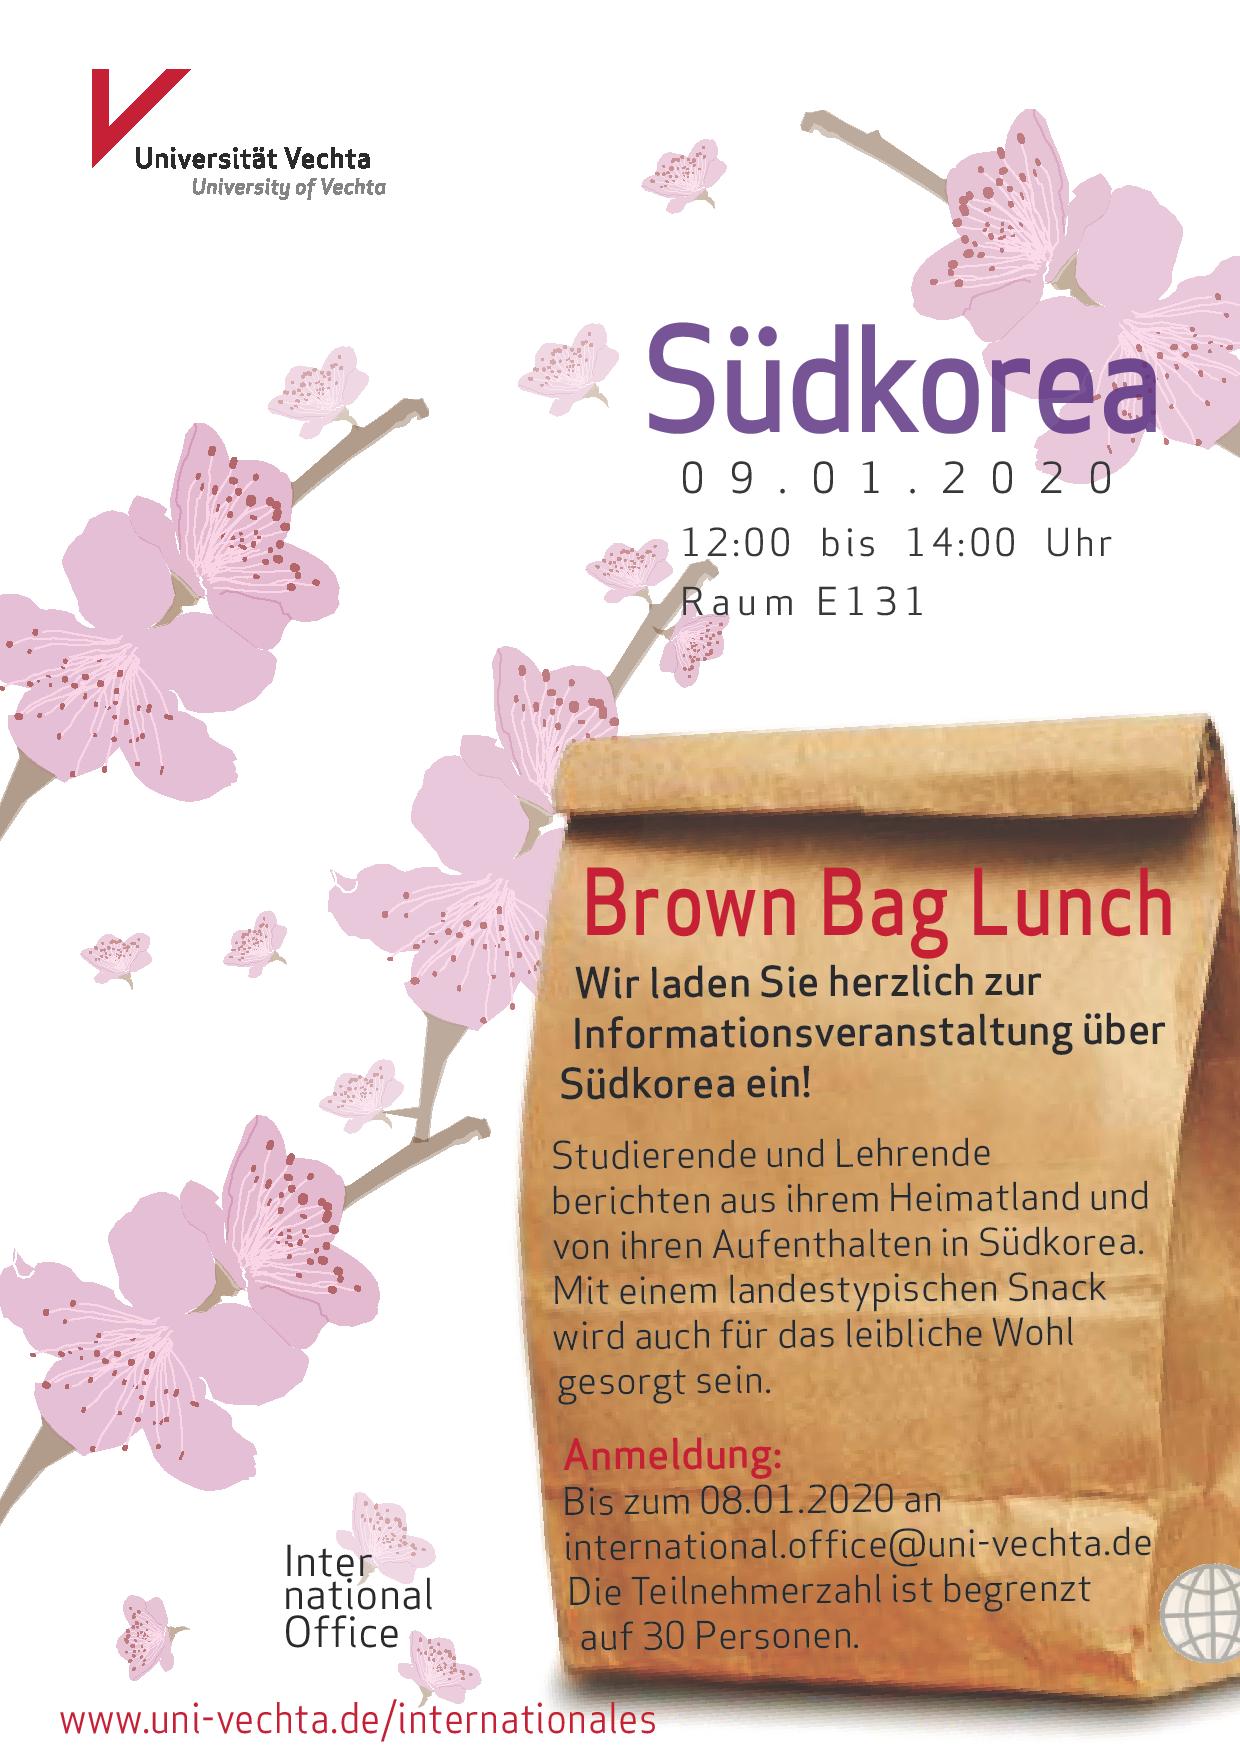 Im Mittelpunkt steht eine braune Papiertüte mit der Aufschrift "Brown Bag Lunch", die zu einer Infoveranstaltung über Südkorea einlädt. Im Hintergrund sind einige Kirschblüten auf weißem Hintergrund zu erkennen.